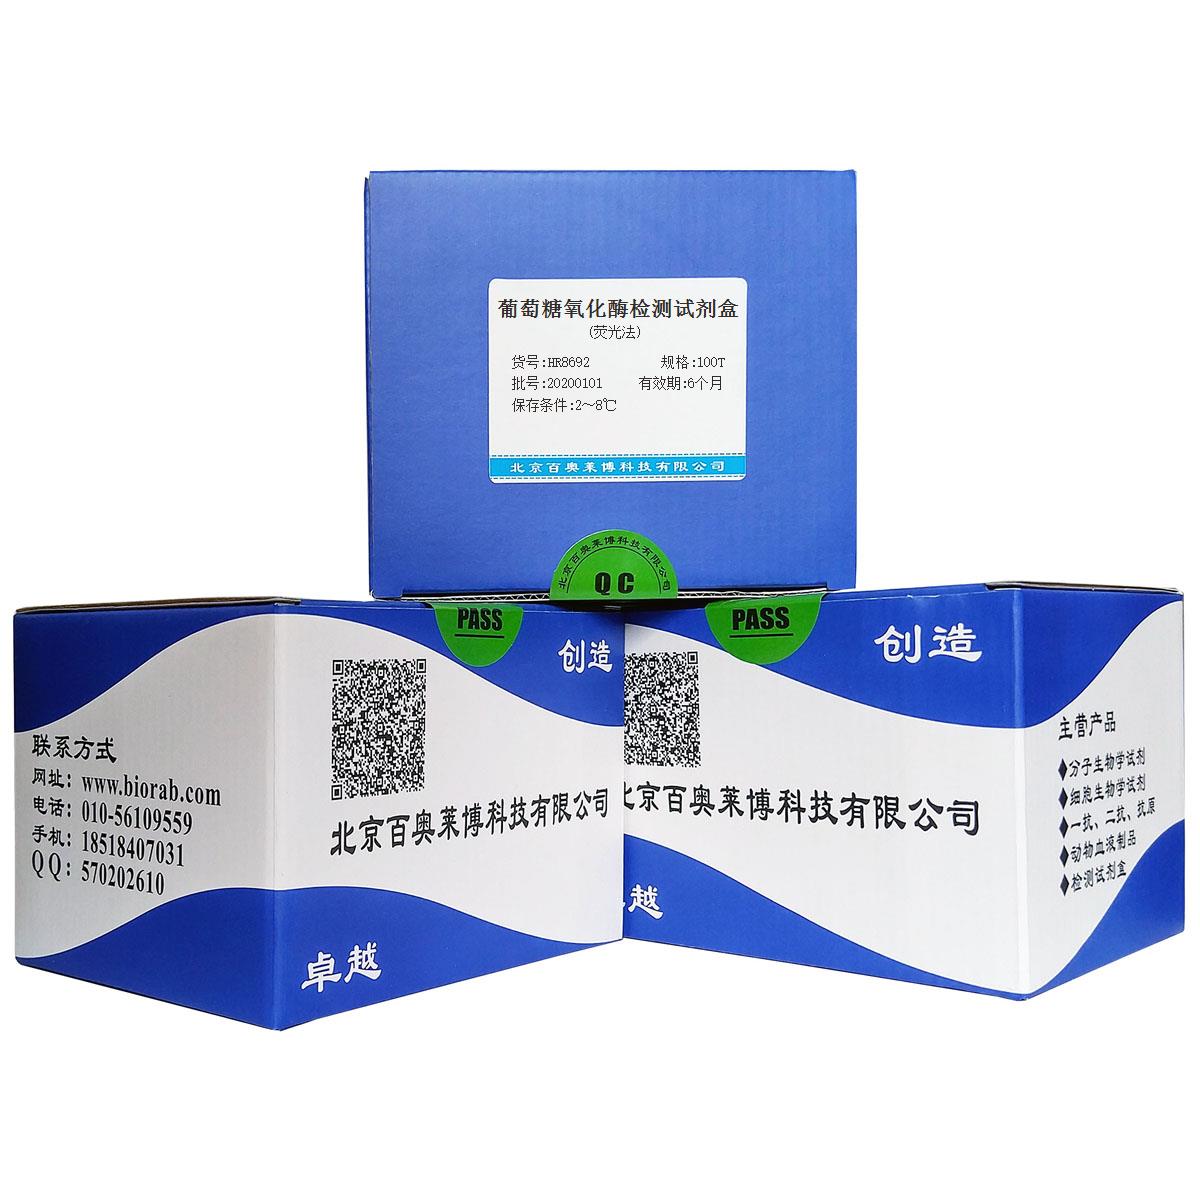 葡萄糖氧化酶检测试剂盒(荧光法)优惠促销